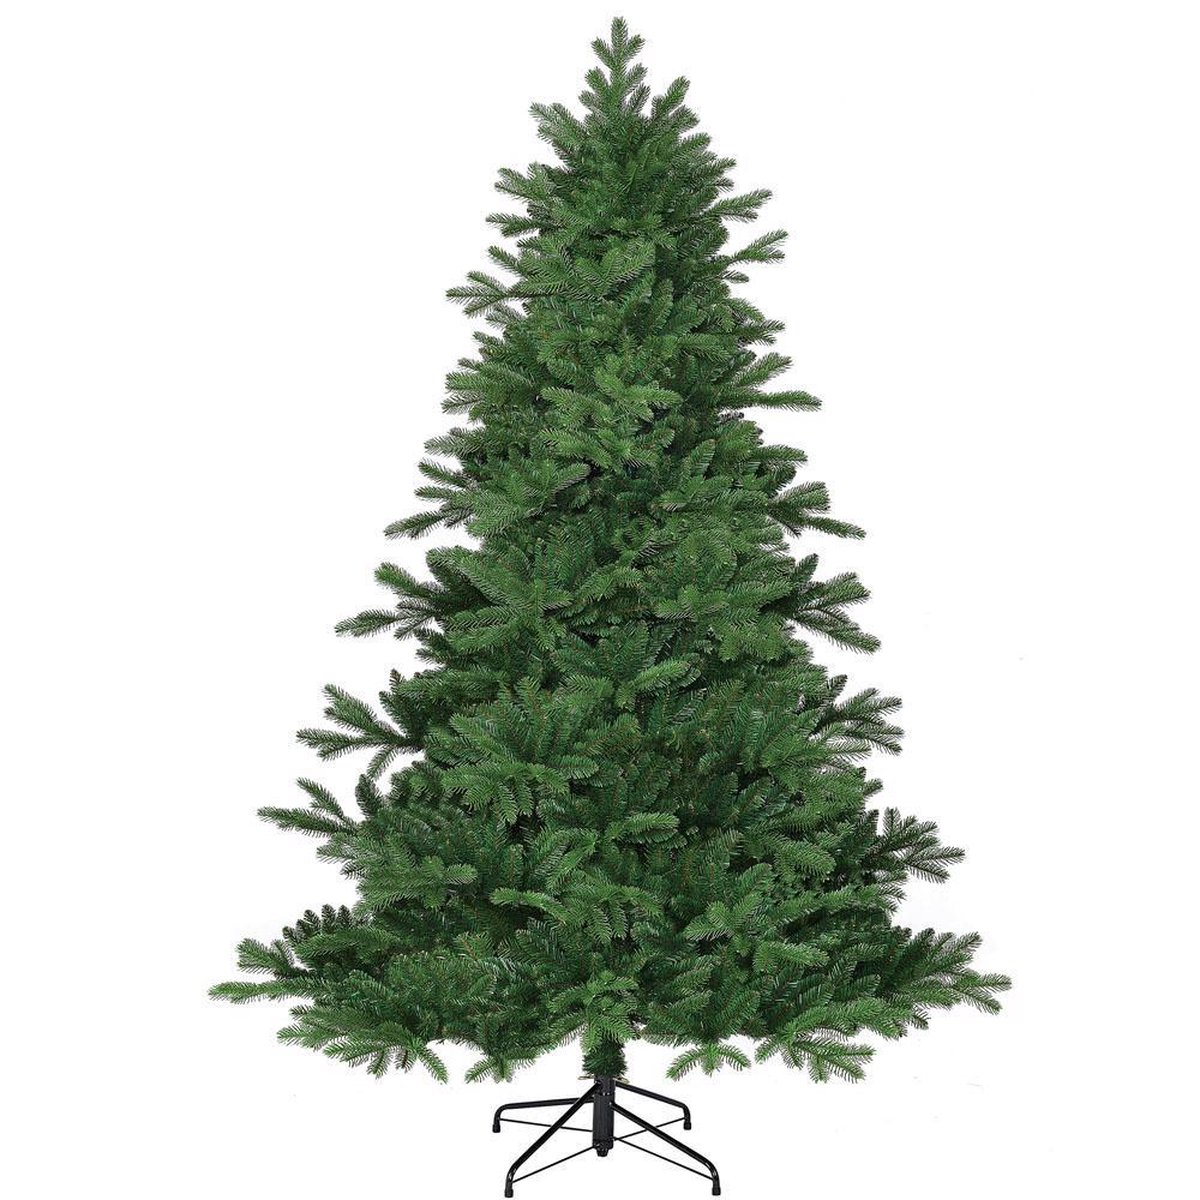 Brampton Spruce - Groen - BlackBox kunstkerstboom